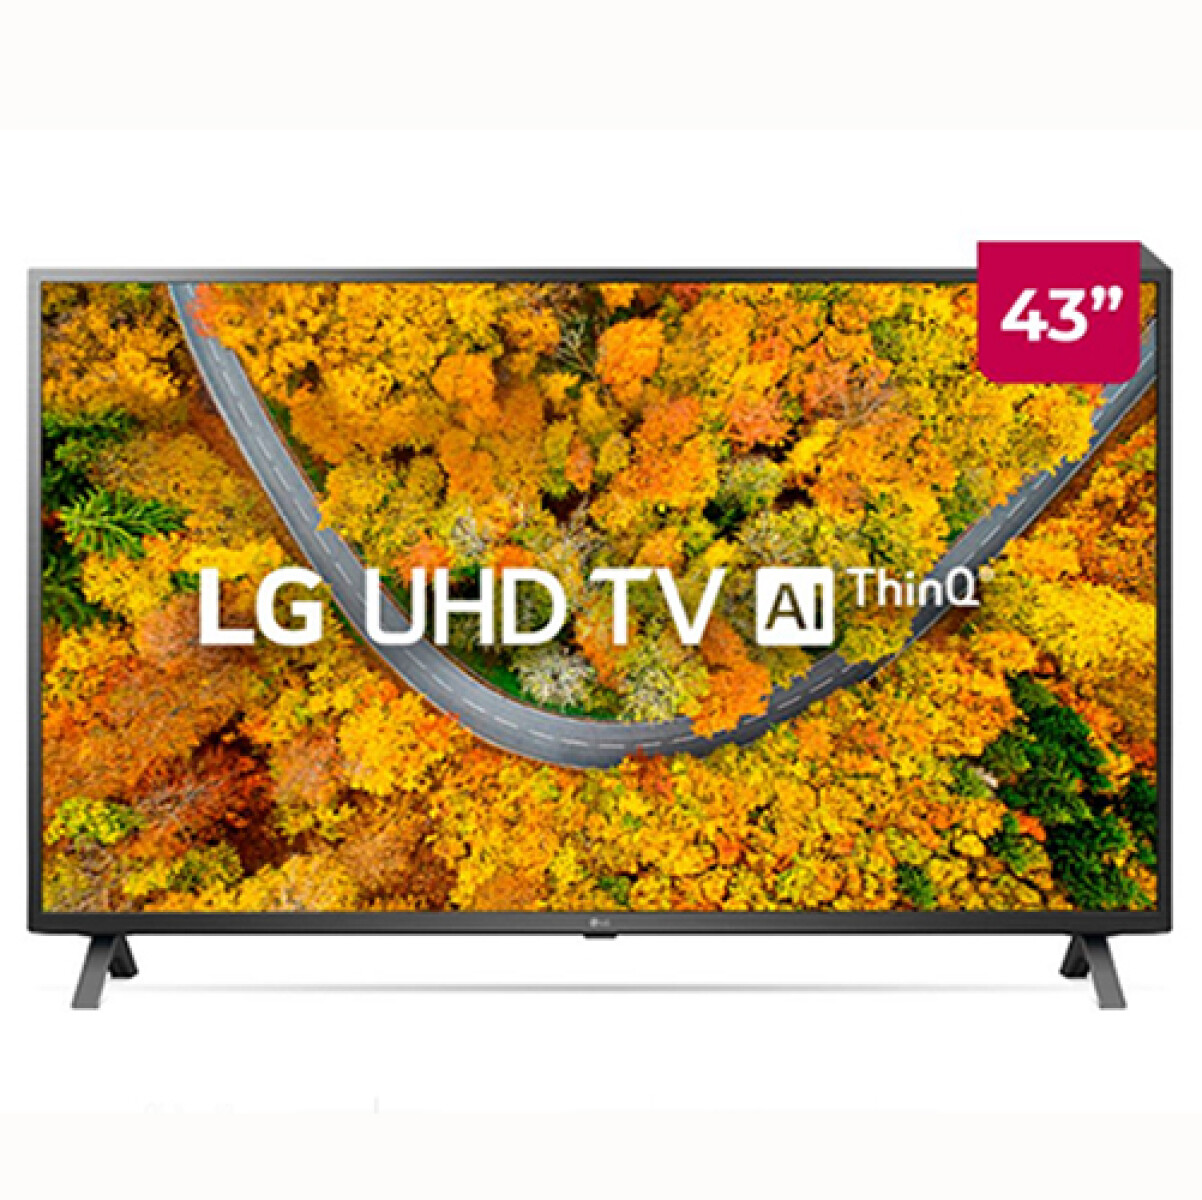 TV LG 43” -43UP7500PSF/Q7500 4K UHD SMART - Sin color 